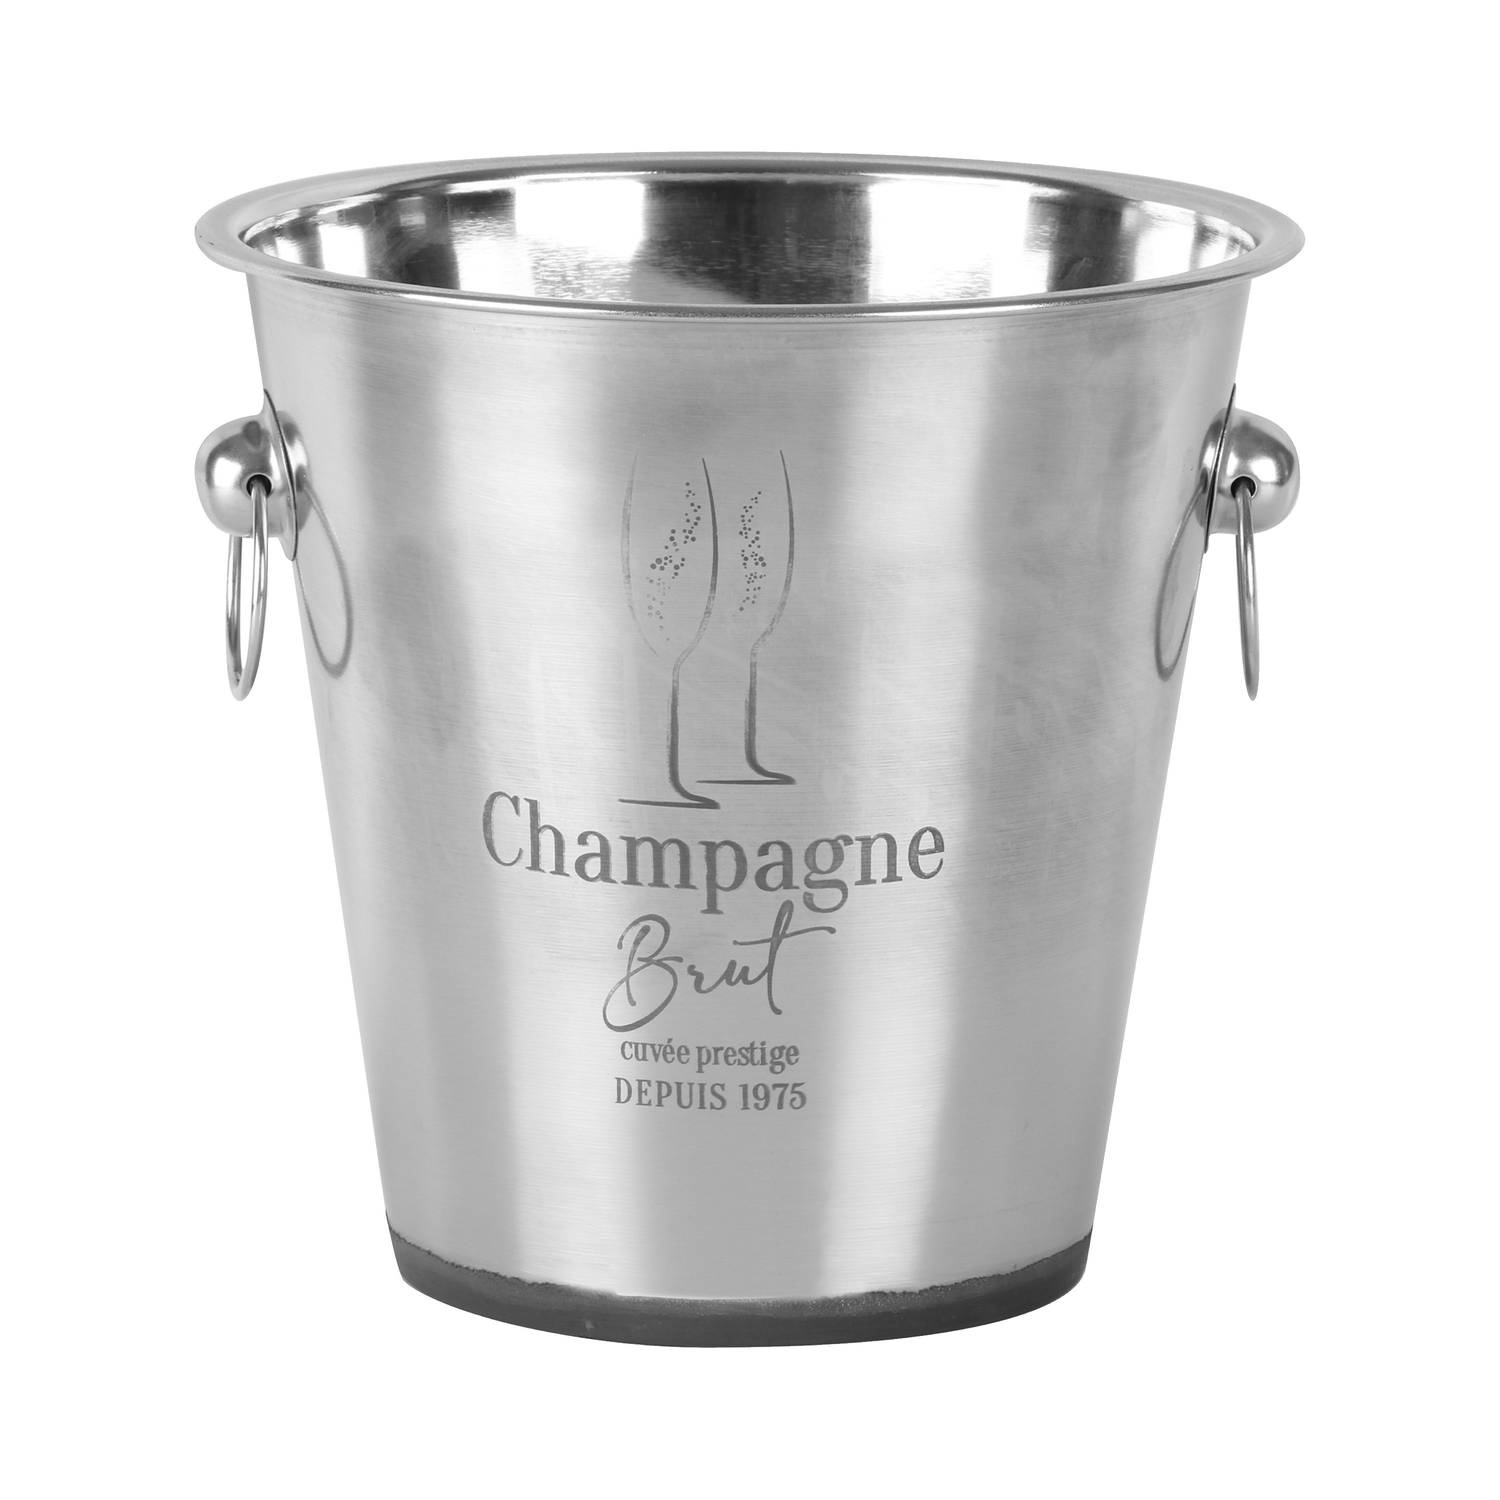 Urban Living Champagne & wijnfles koeler-ijsemmer zilver rvs 22 x 21 cm De luxe model IJsemmers